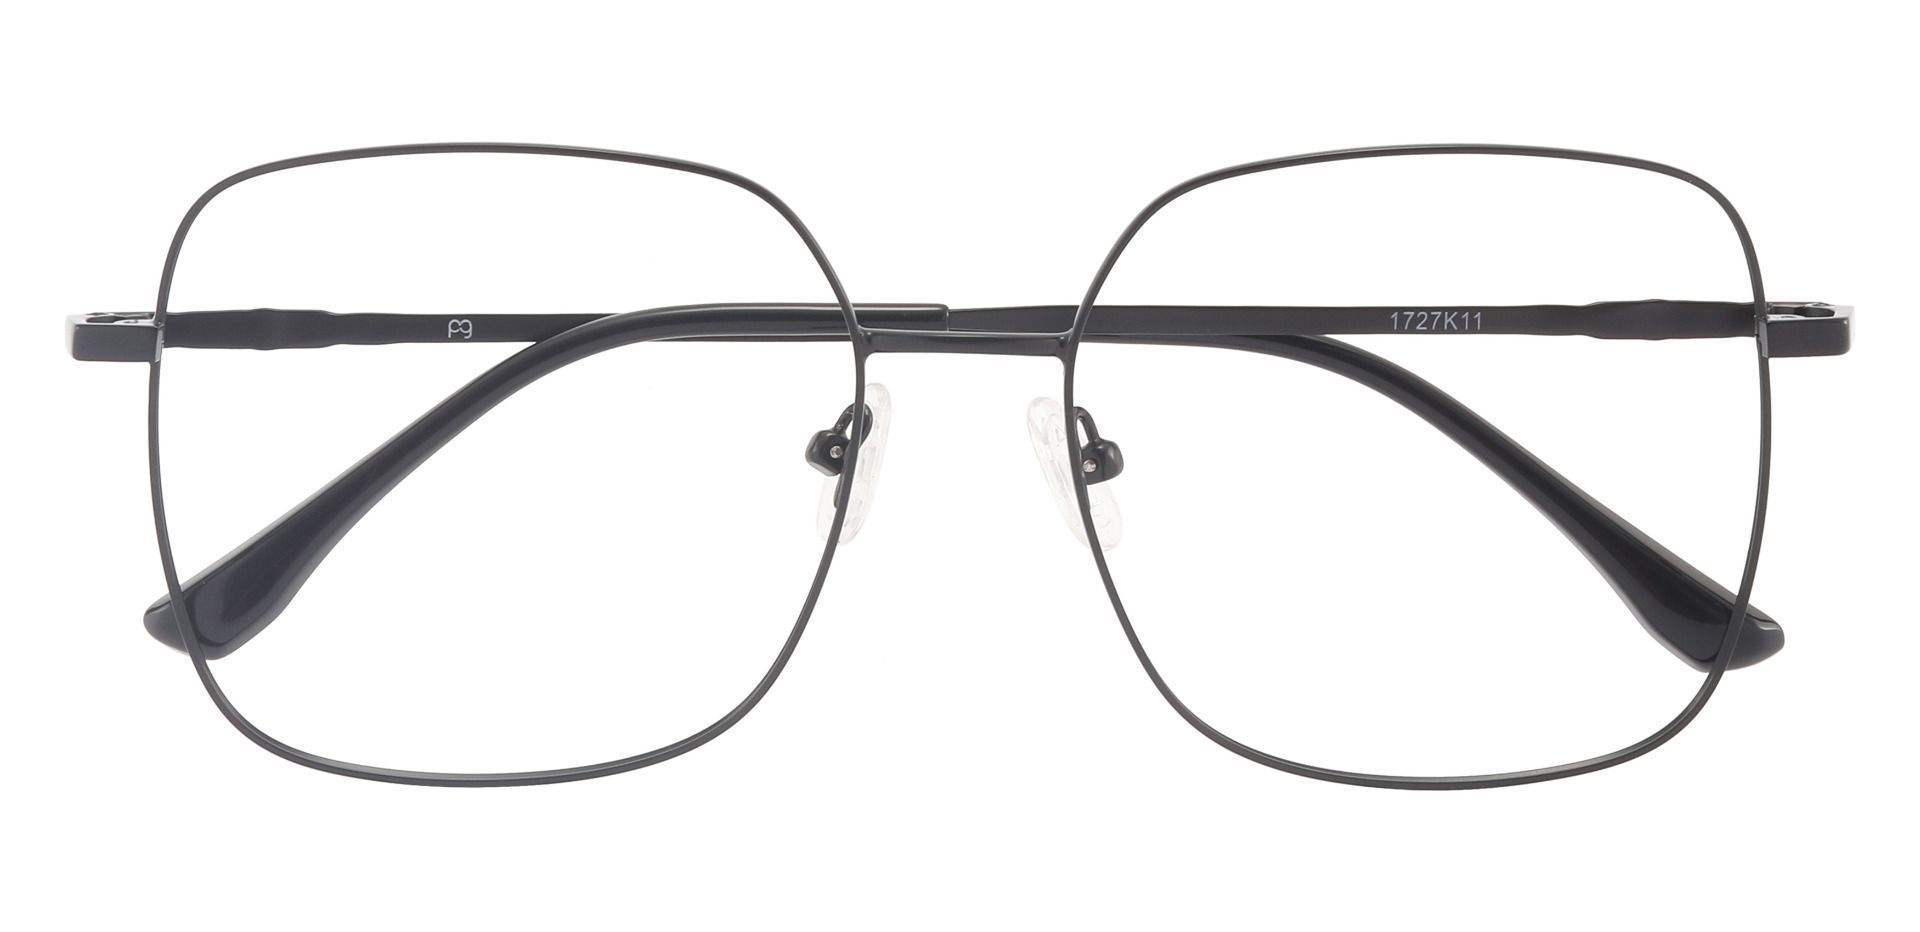 Sanborn Square Prescription Glasses - Black